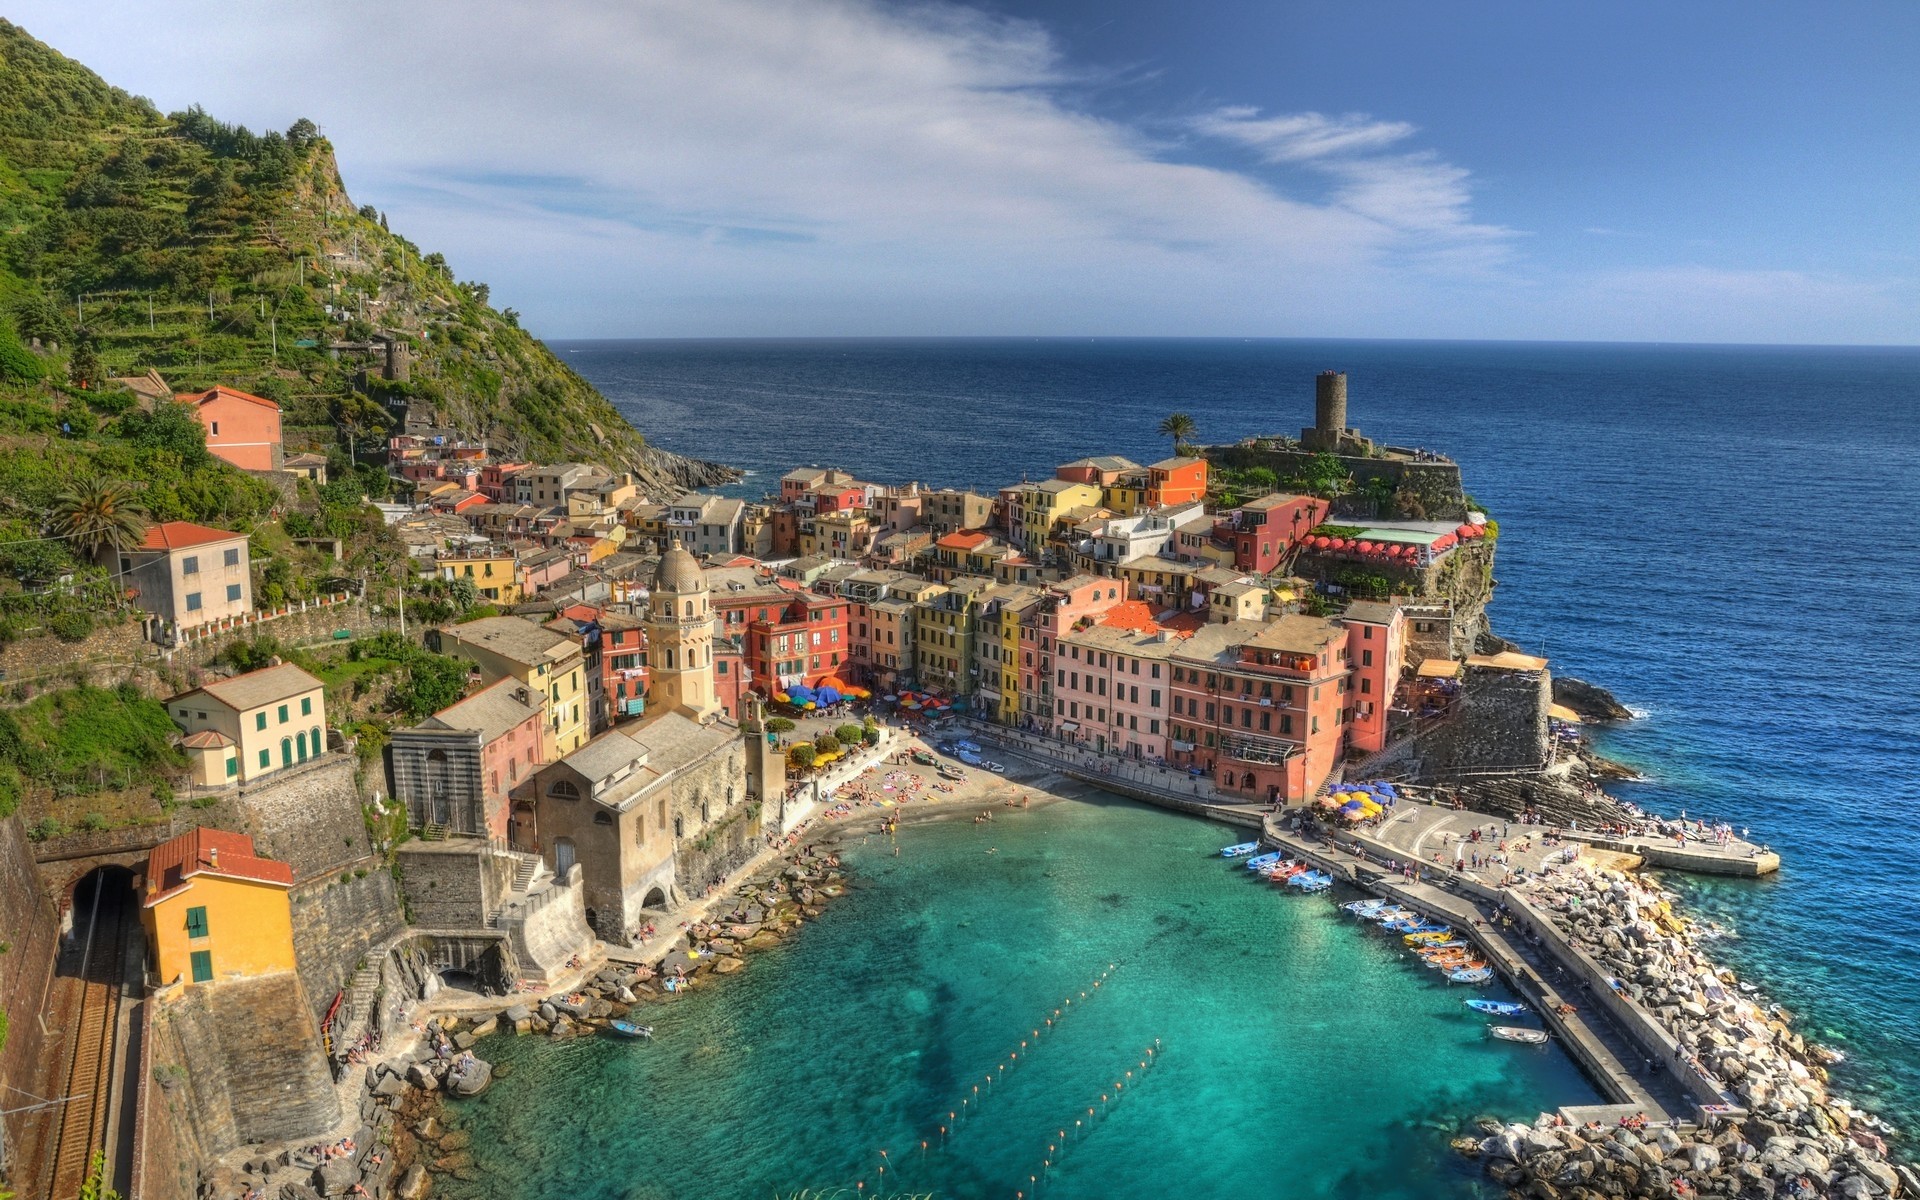 Cinque Terre được coi là một trong những địa điểm tuyệt đẹp nhất ở vịnh Liguria, nằm ở phía tây bắc đất nước Italia. Với những nắm đồi bằng terraced granite, trồng vườn và nhiều ngôi nhà cổ, bức ảnh nền Cinque Terre chắc chắn sẽ khiến bạn ngây ngất. Hãy cùng tải ngay hình nền và trải nghiệm những giây phút thư giãn với vẻ đẹp lãng mạn của Đại Tây Dương.